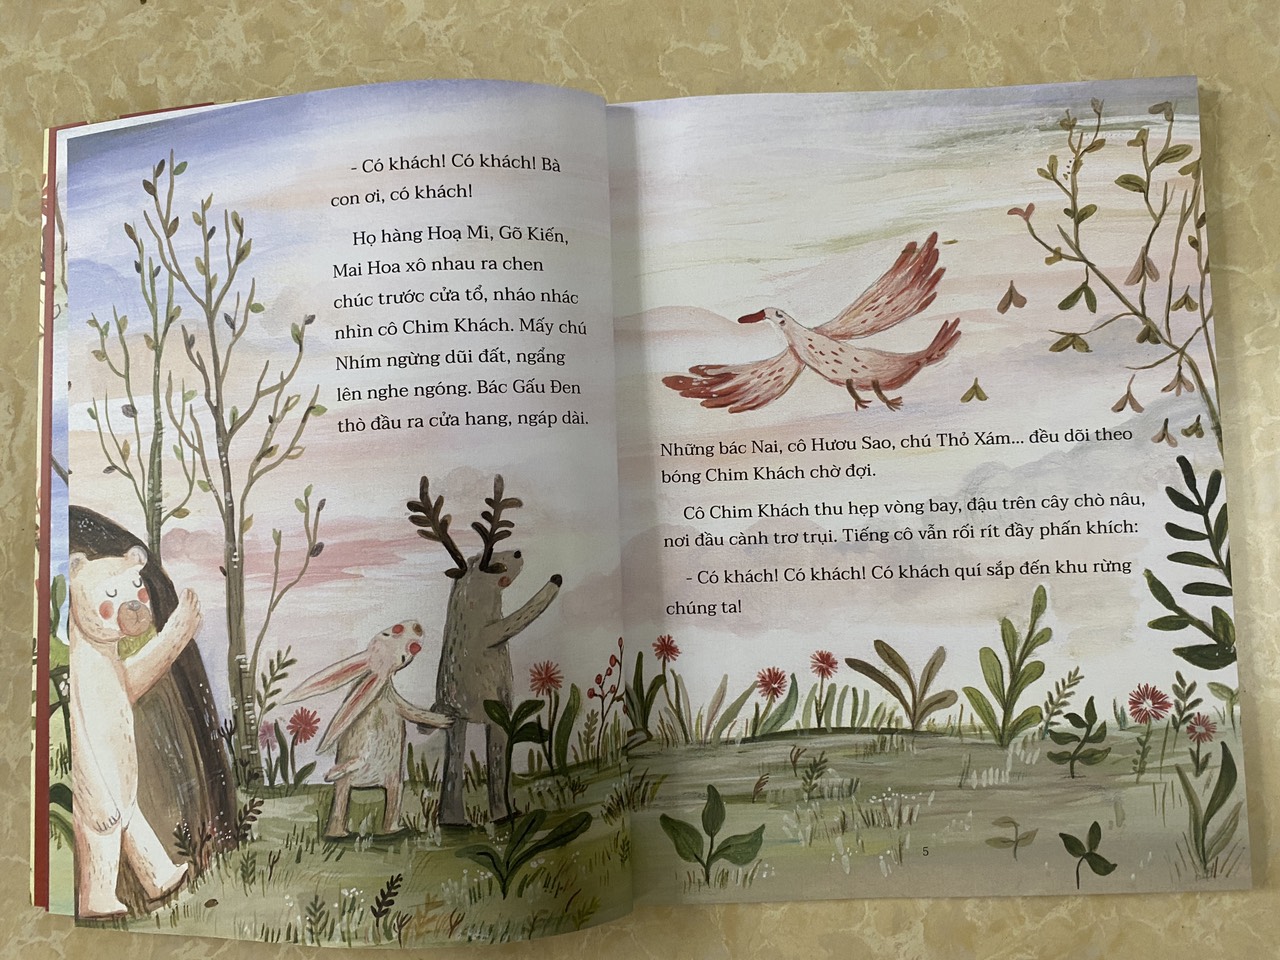 Combo -4 cuốn Trần Hoài Dương: bé Rơm, Tiếng mùa xuân, chuyện vui về chú ếch cốm, Những đóa hồng bạch dâng tặng Andersen